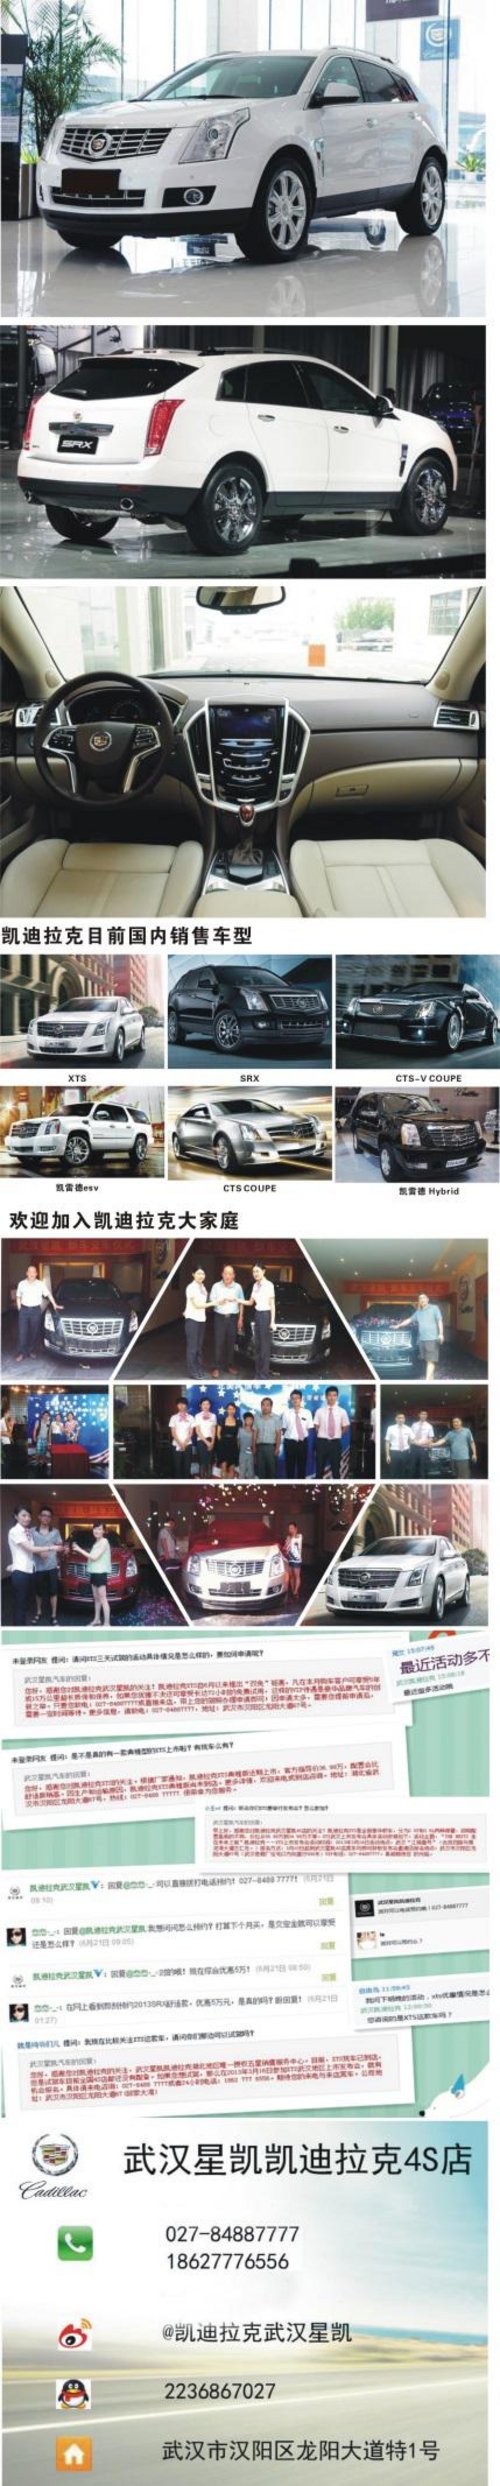 武汉凯迪拉克SRX车展限时抢购现金降4万